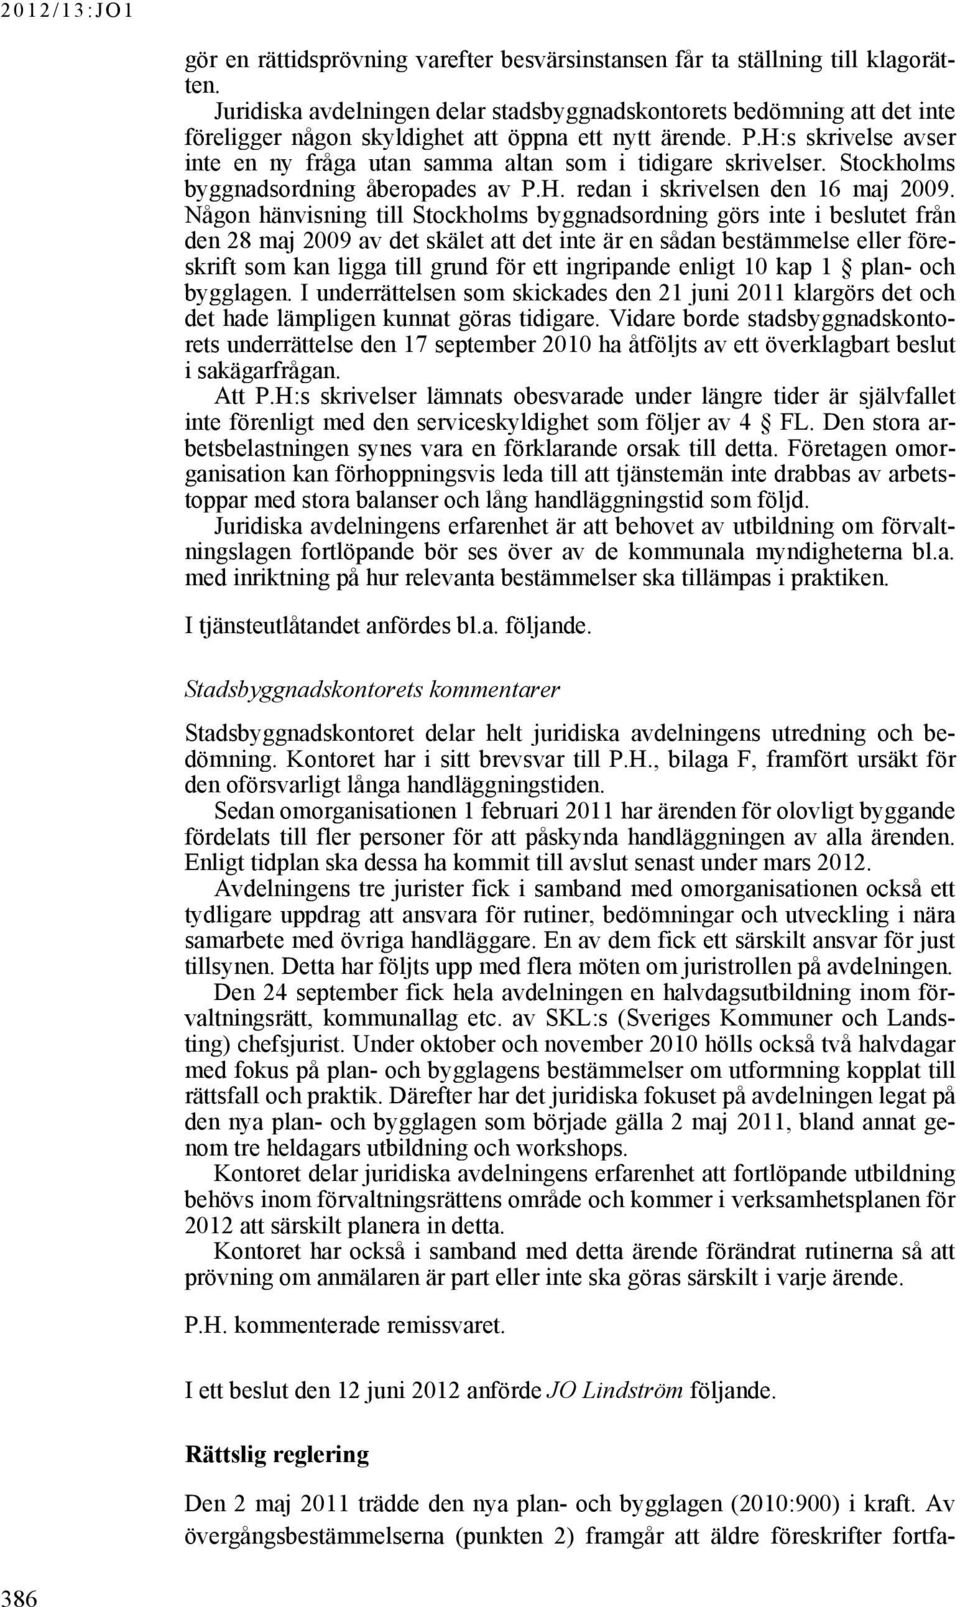 H:s skrivelse avser inte en ny fråga utan samma altan som i tidigare skrivelser. Stockholms byggnadsordning åberopades av P.H. redan i skrivelsen den 16 maj 2009.